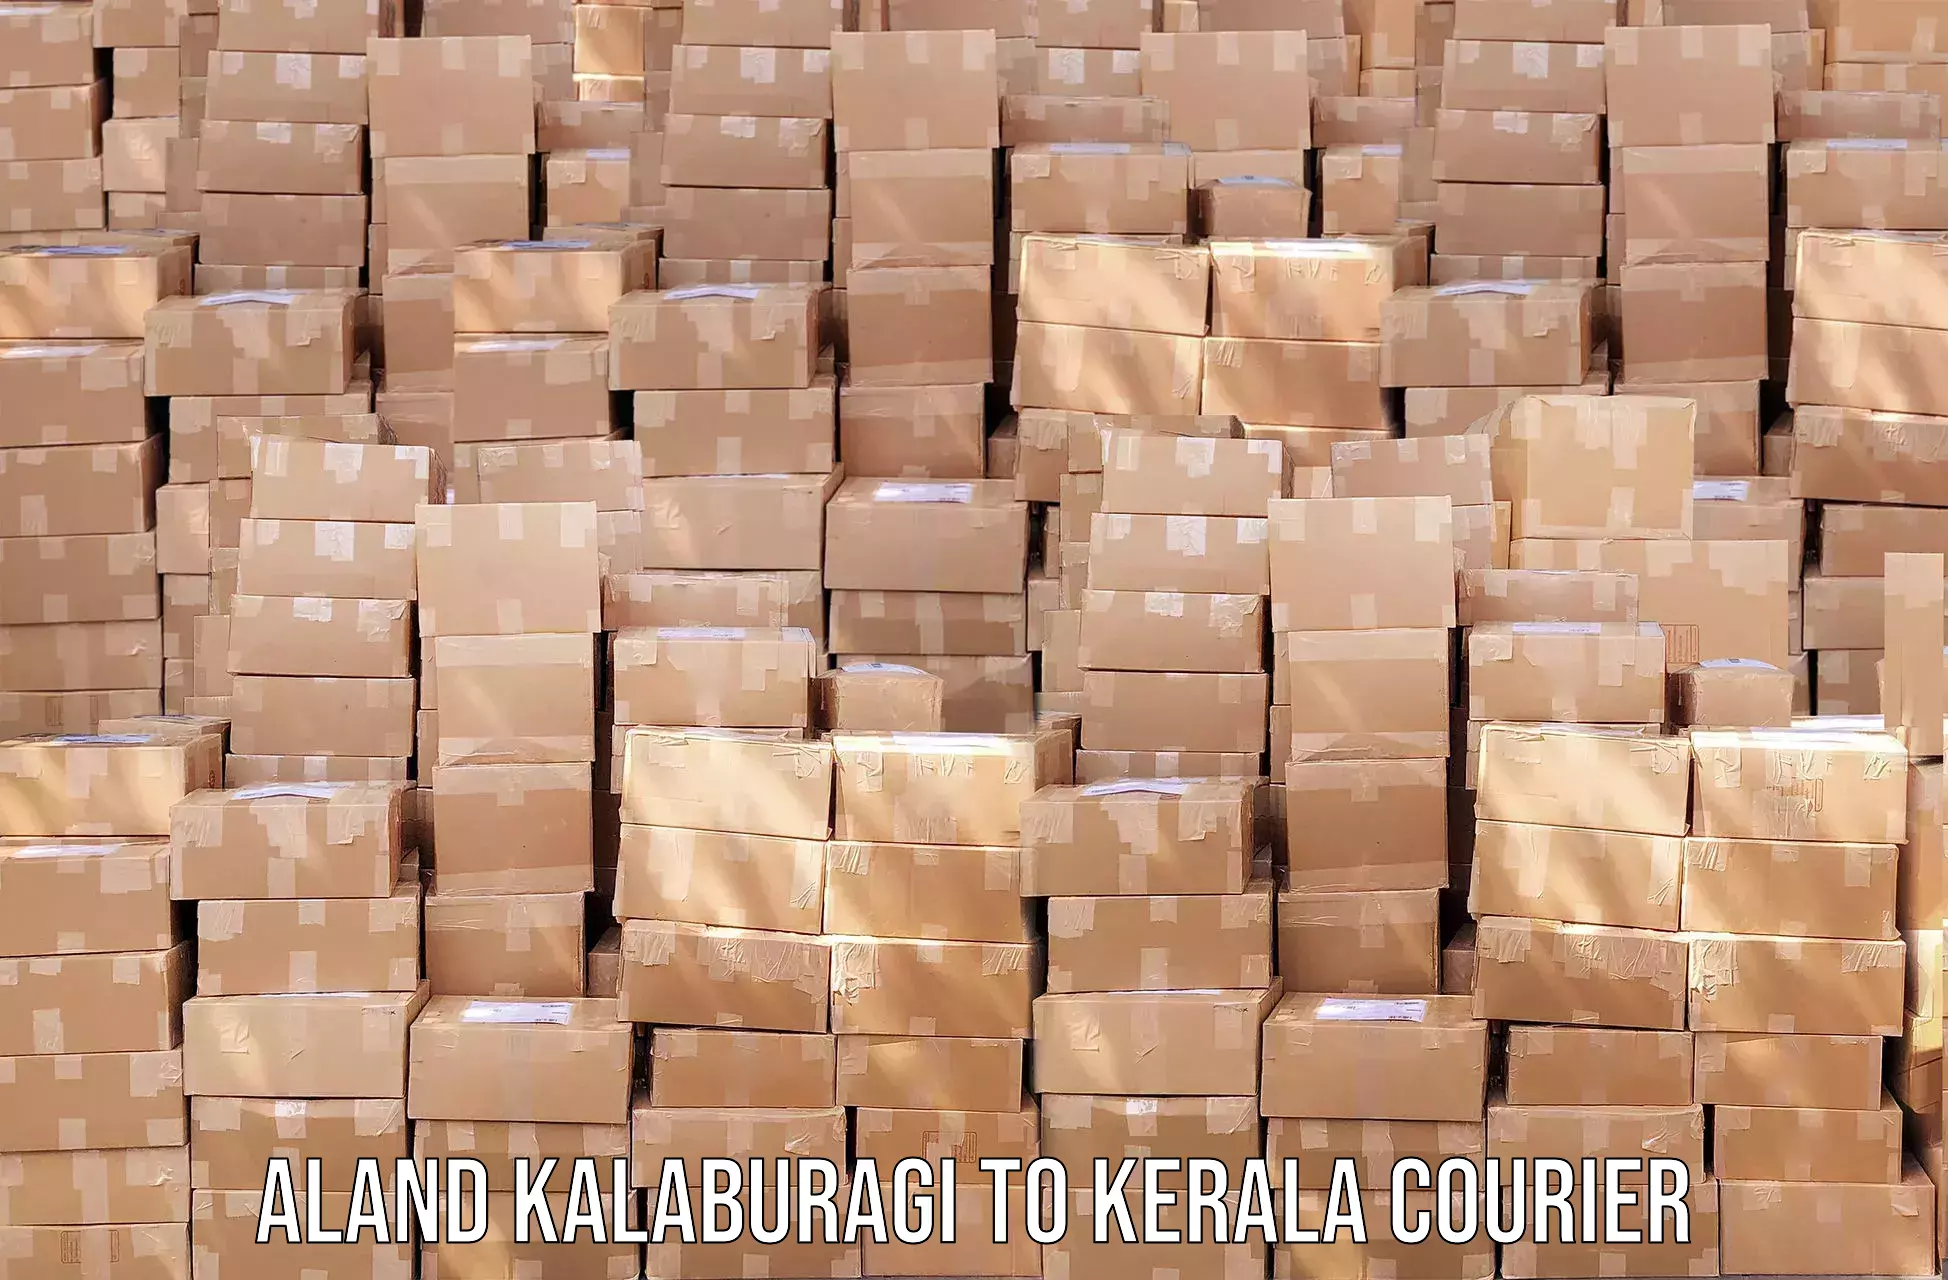 Global freight services Aland Kalaburagi to Kerala